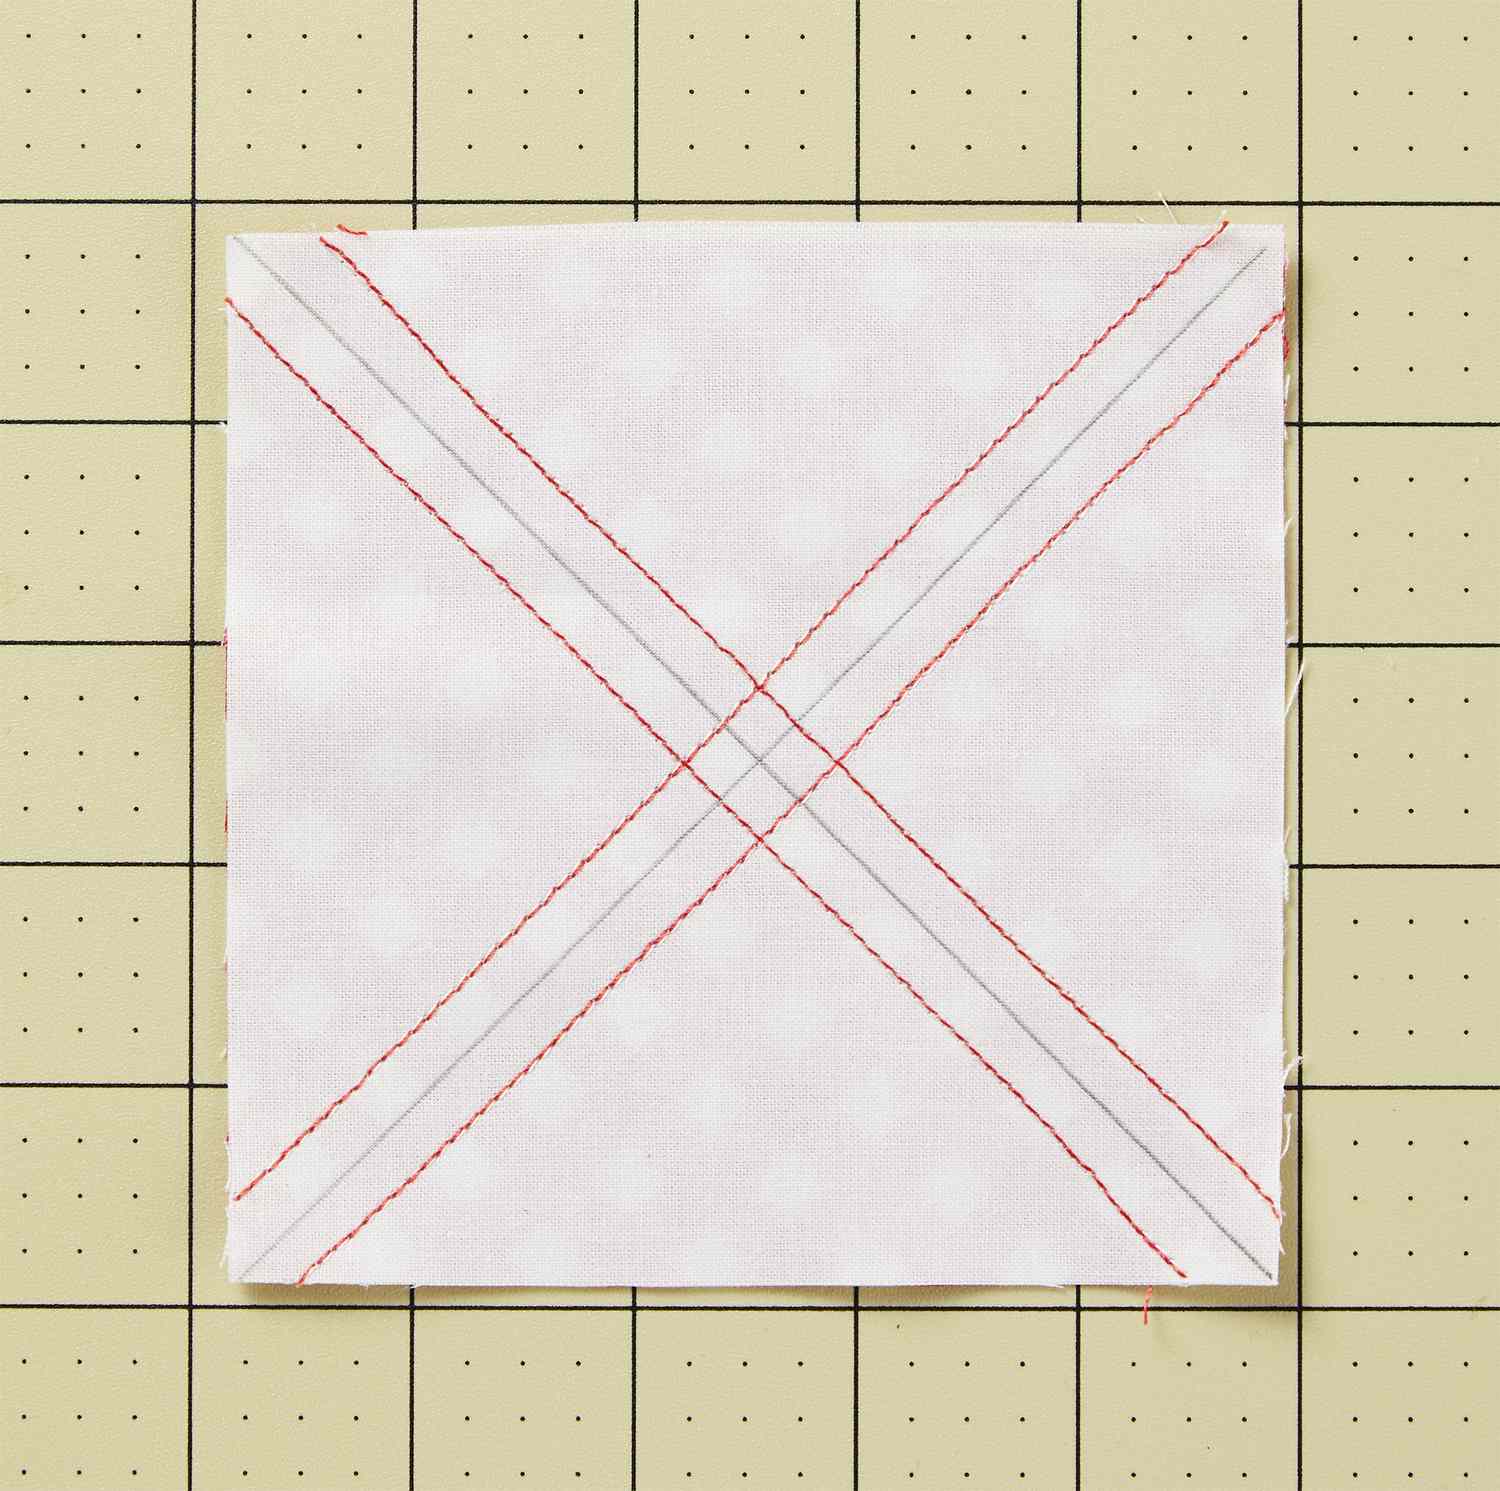 triangle-square